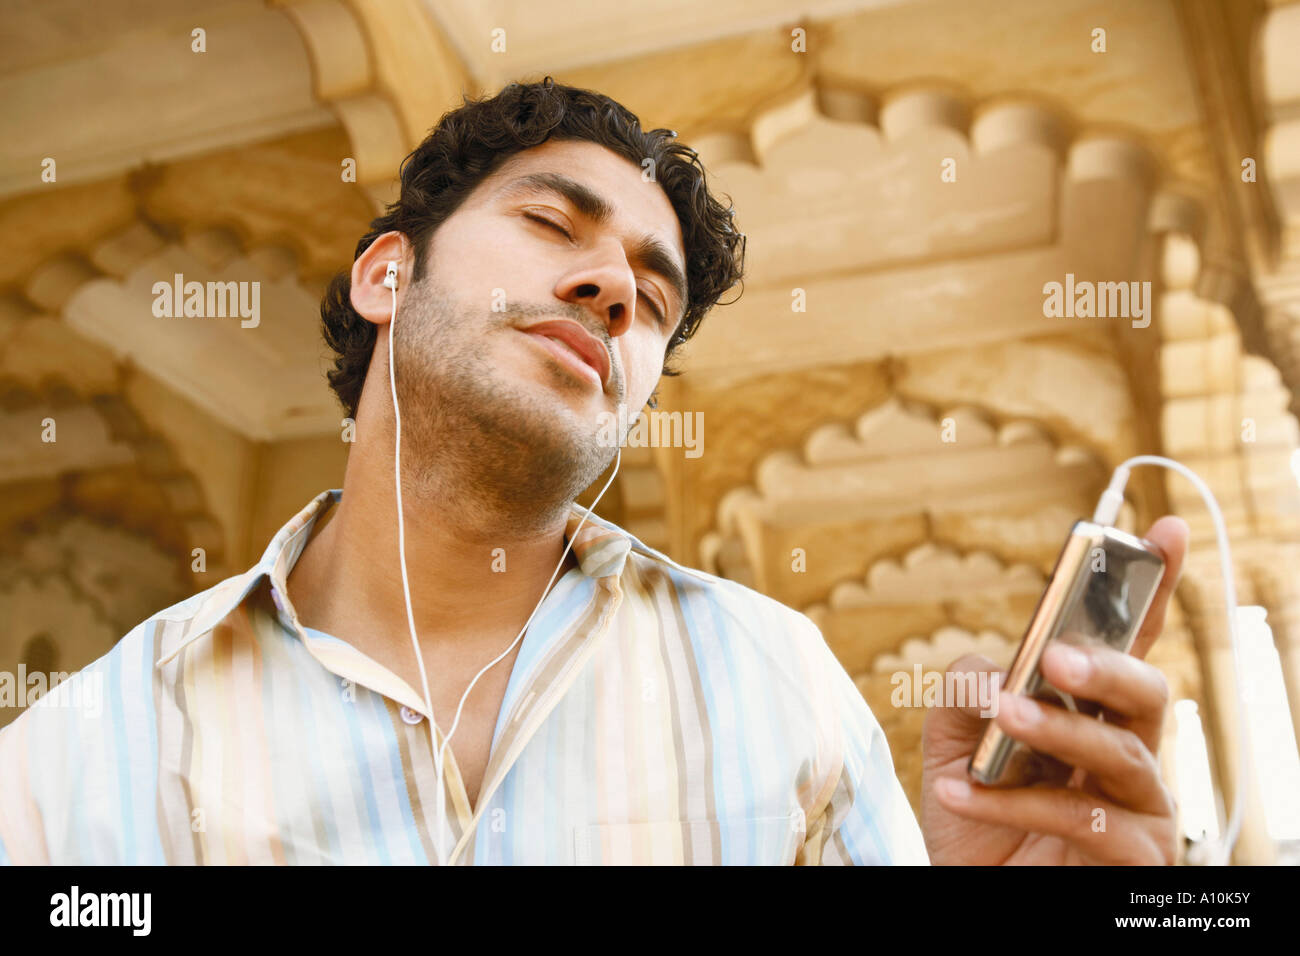 Ángulo de visión baja de un joven escuchando música en auriculares con los ojos cerrados, el Fuerte de Agra, Agra, Uttar Pradesh, India Foto de stock